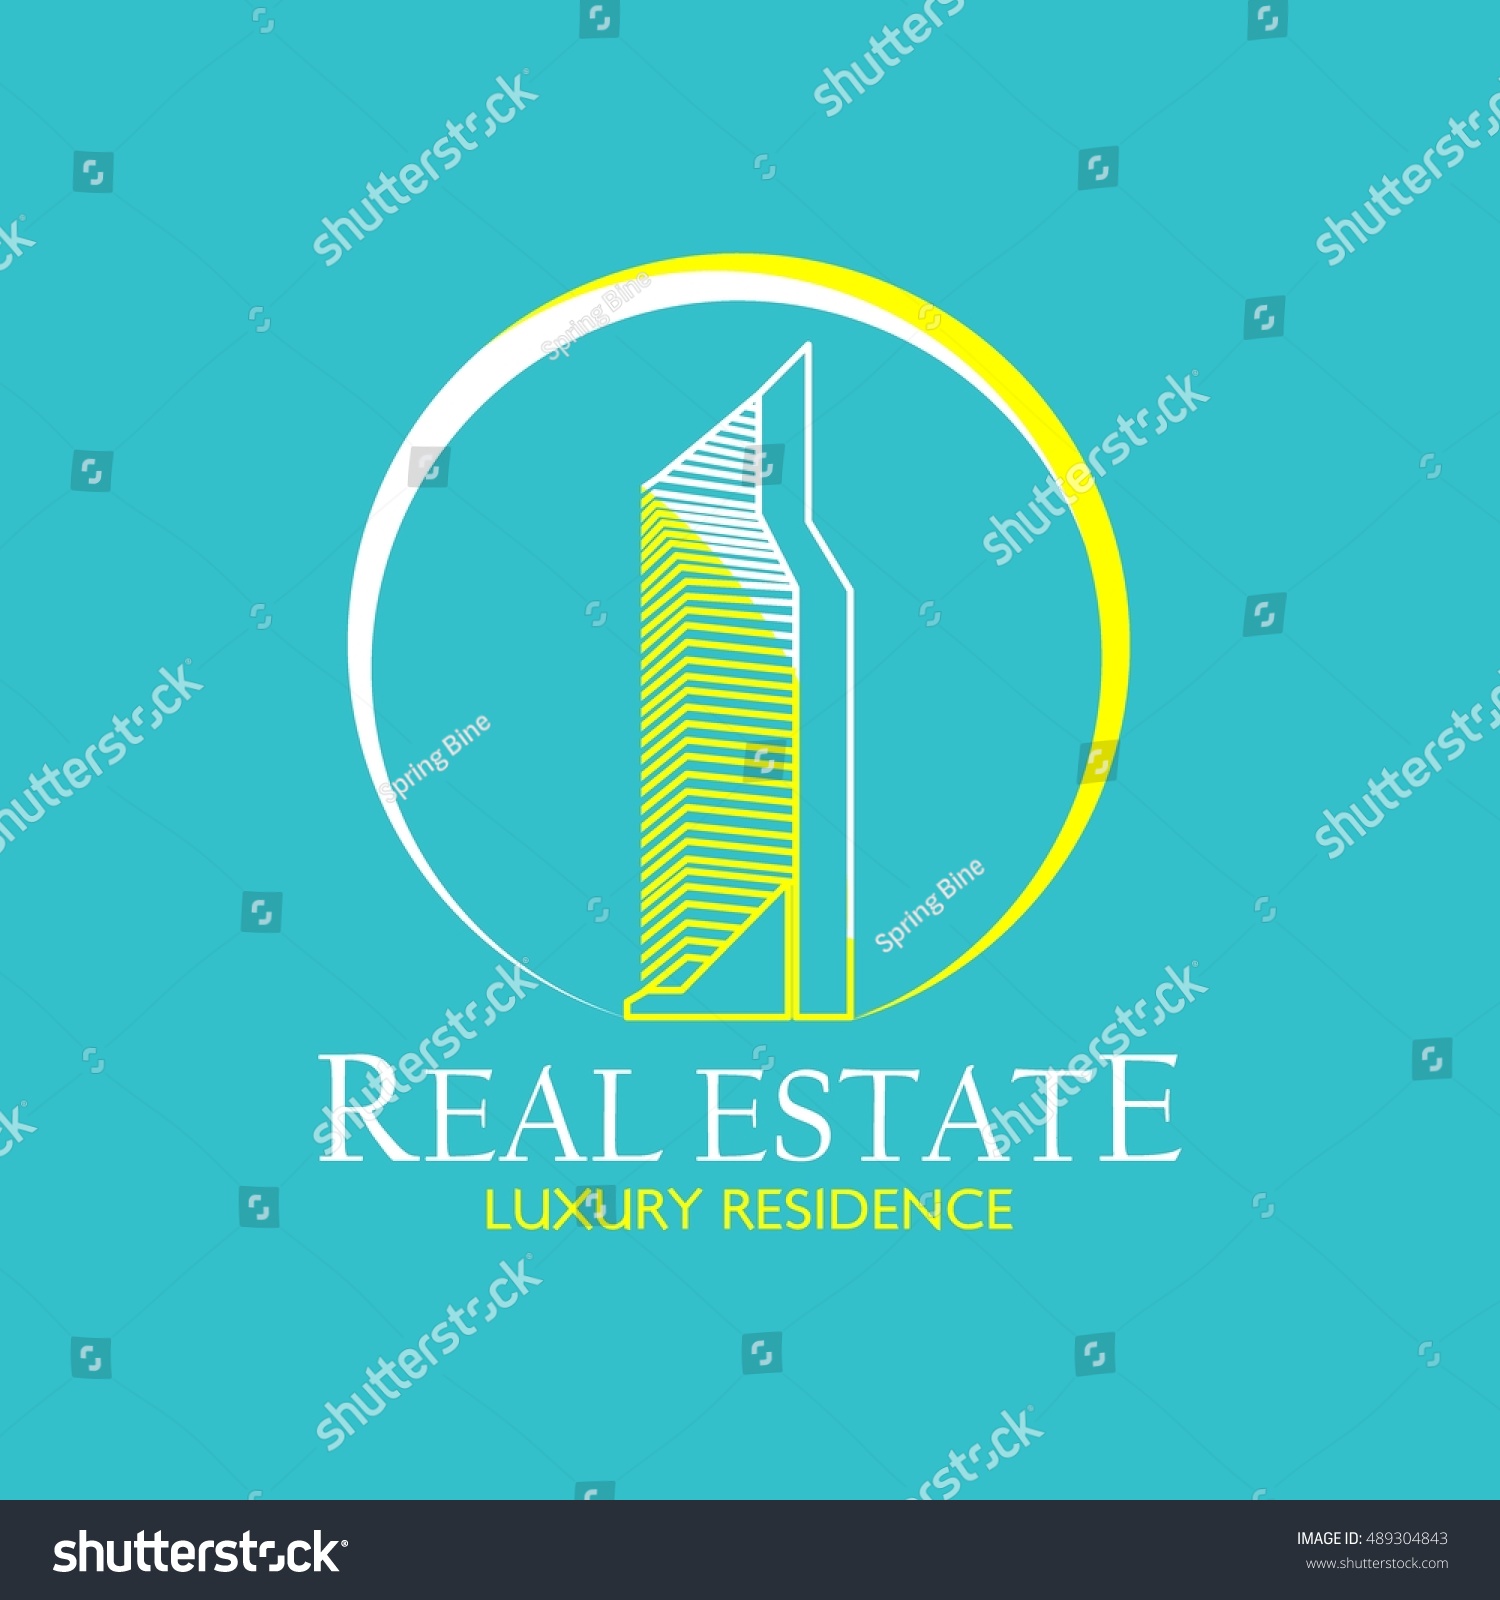 Real Estate Logo Design Template Creative Royalty Free Stock Vector 489304843 8266